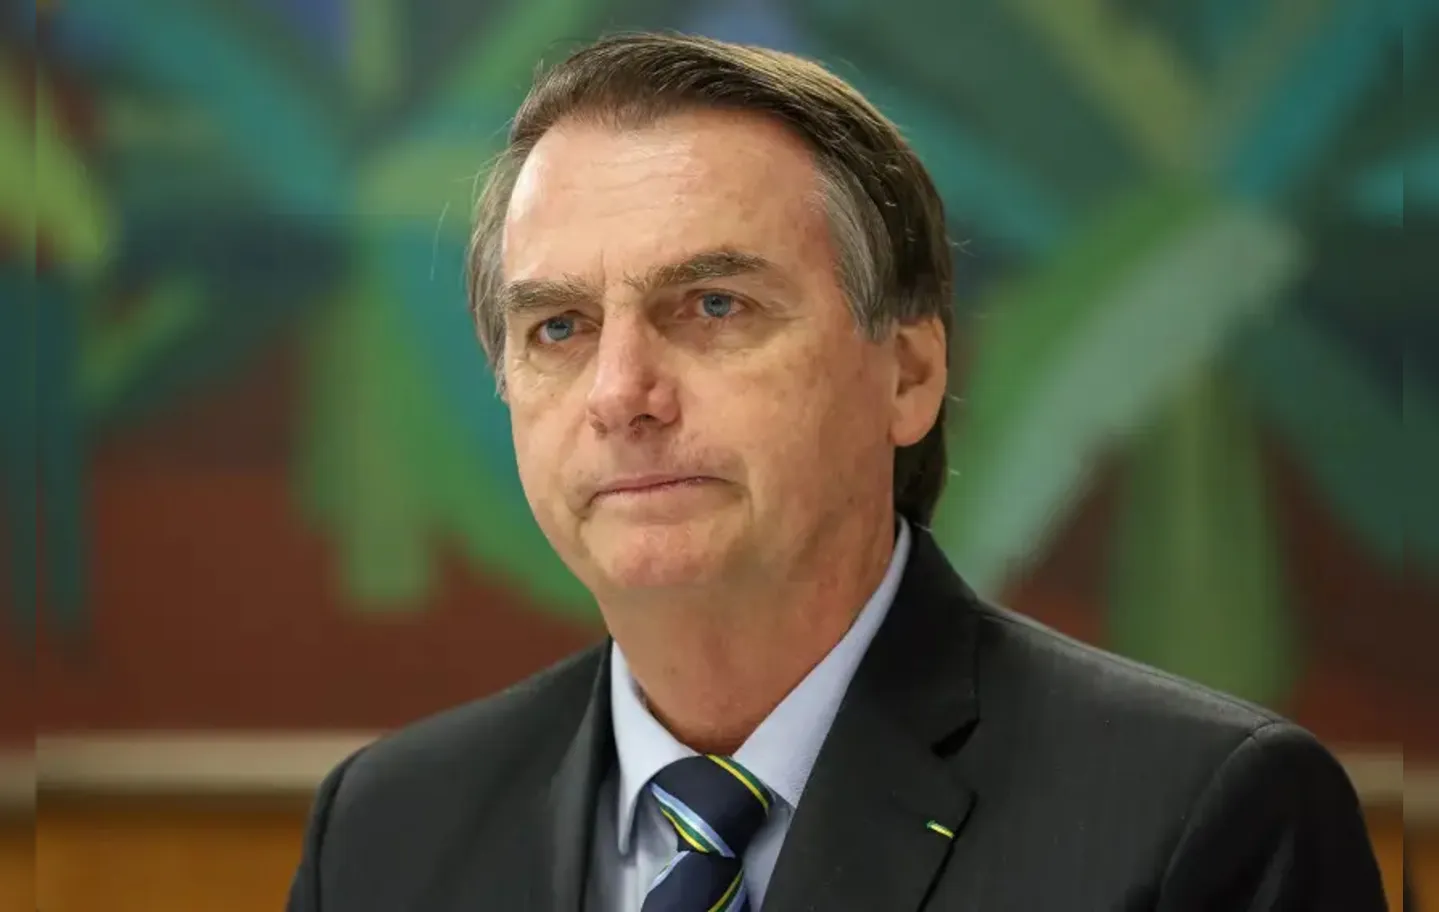 No entendimento de Jair Bolsonaro (PL), fazer parte da cerimônia e não se posicionar sobre falar de Alexandre de Moraes poderá fragilizá-lo